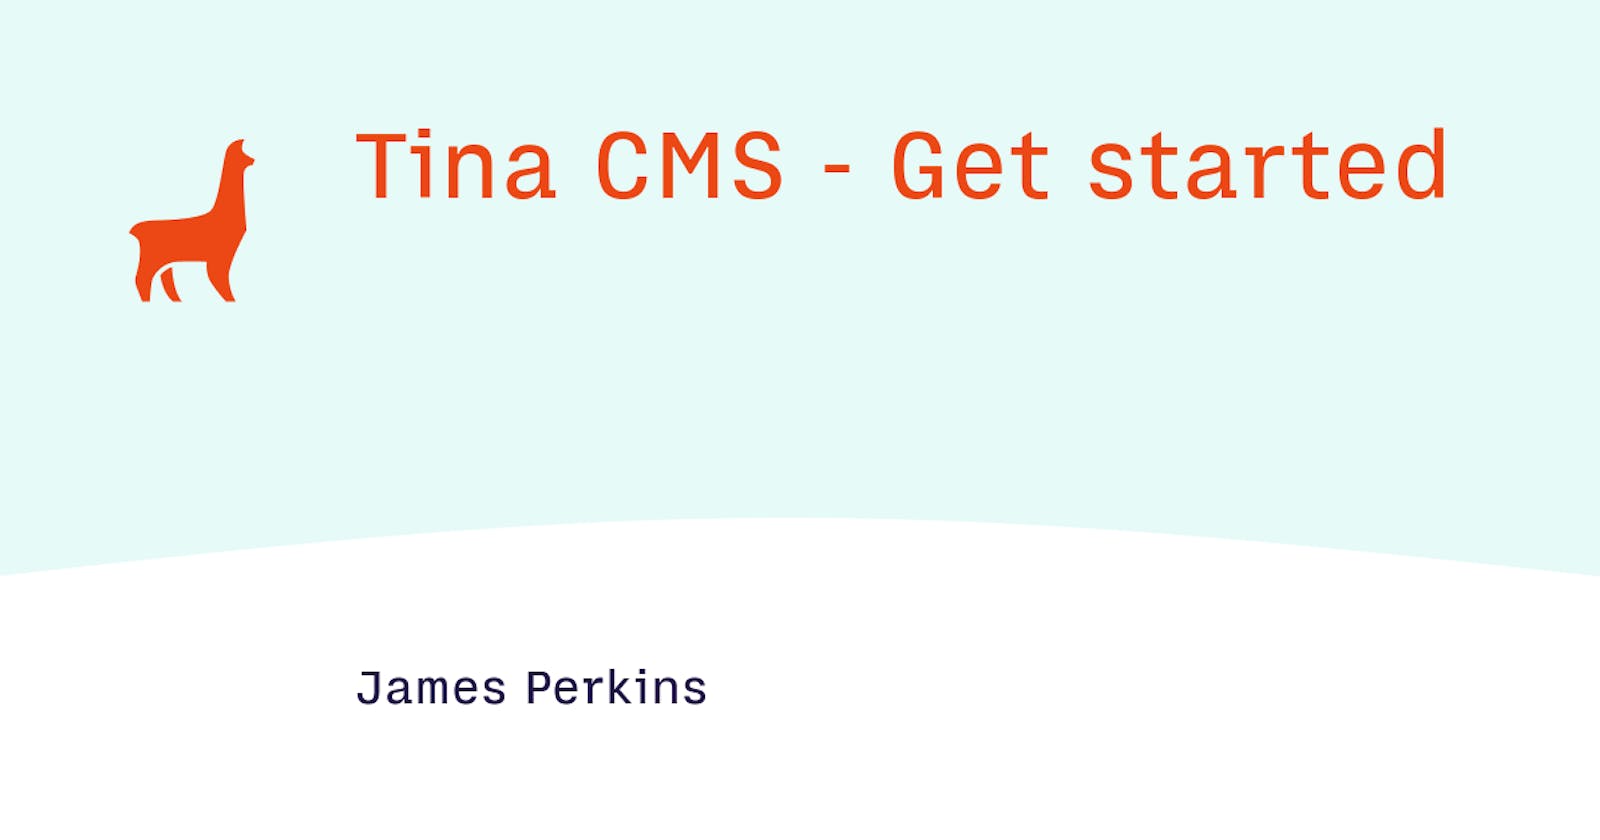 Tina CMS - Get started